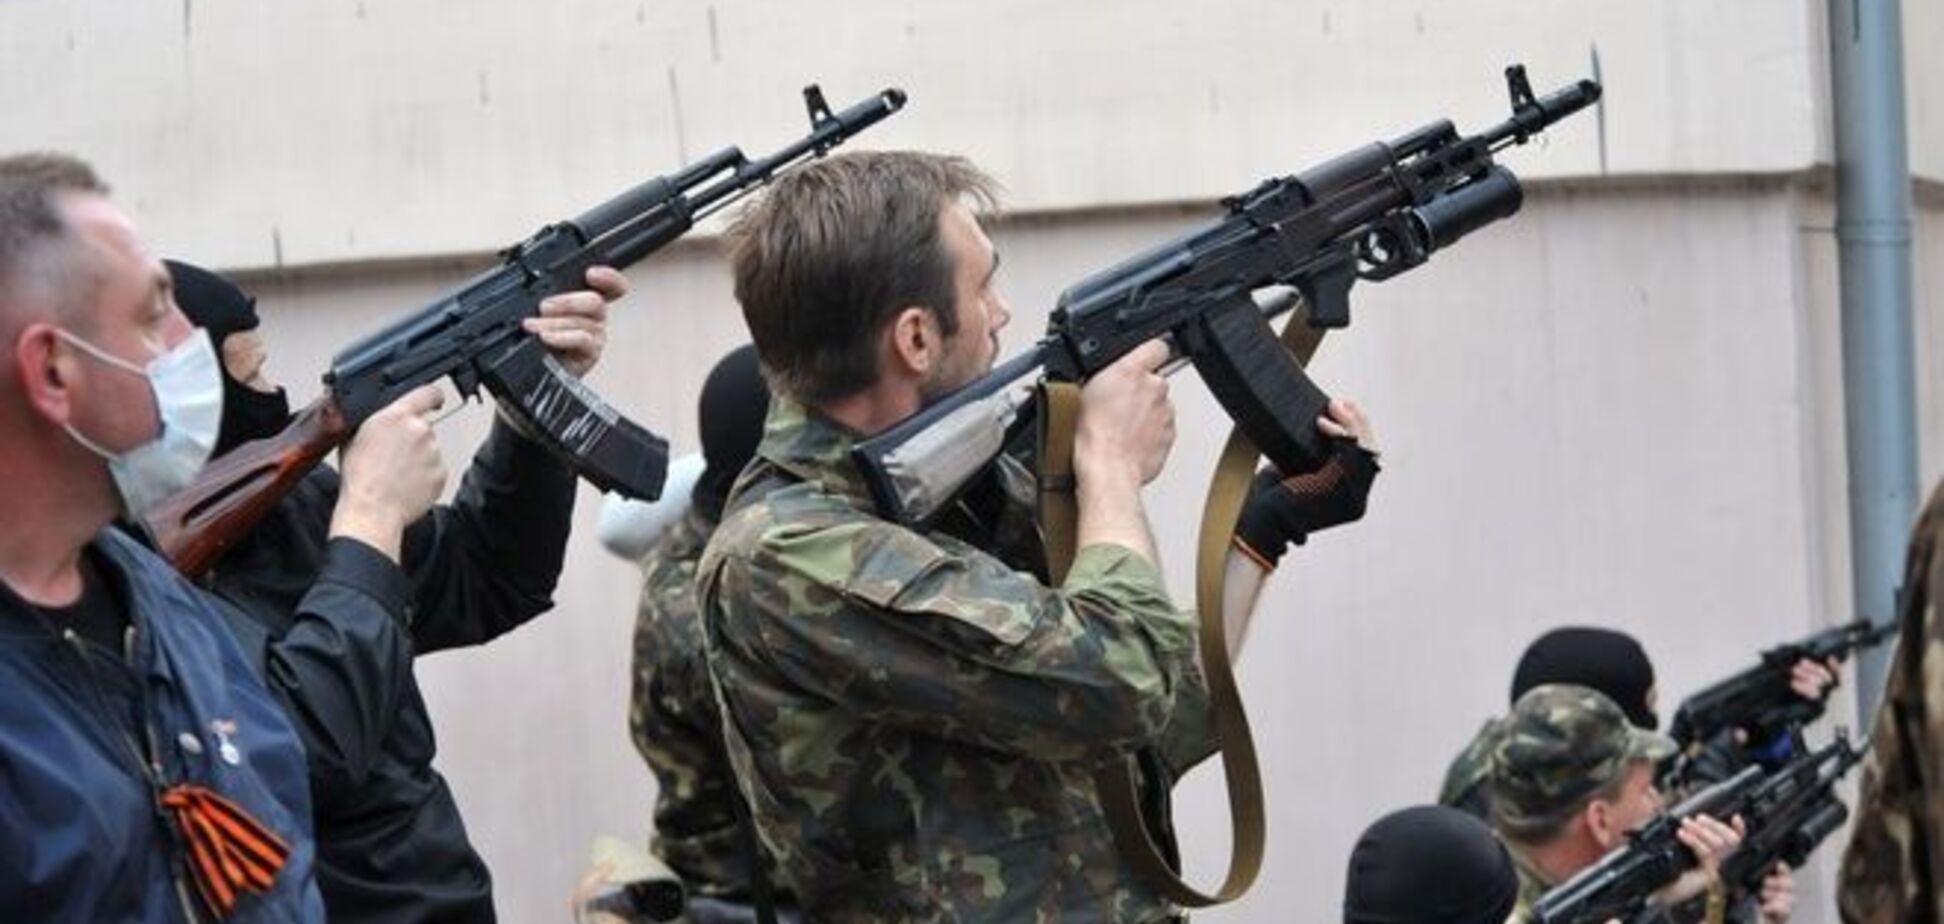 ЗМІ розповіли, як у Мінську Україну змушували помилувати терористів. Документ